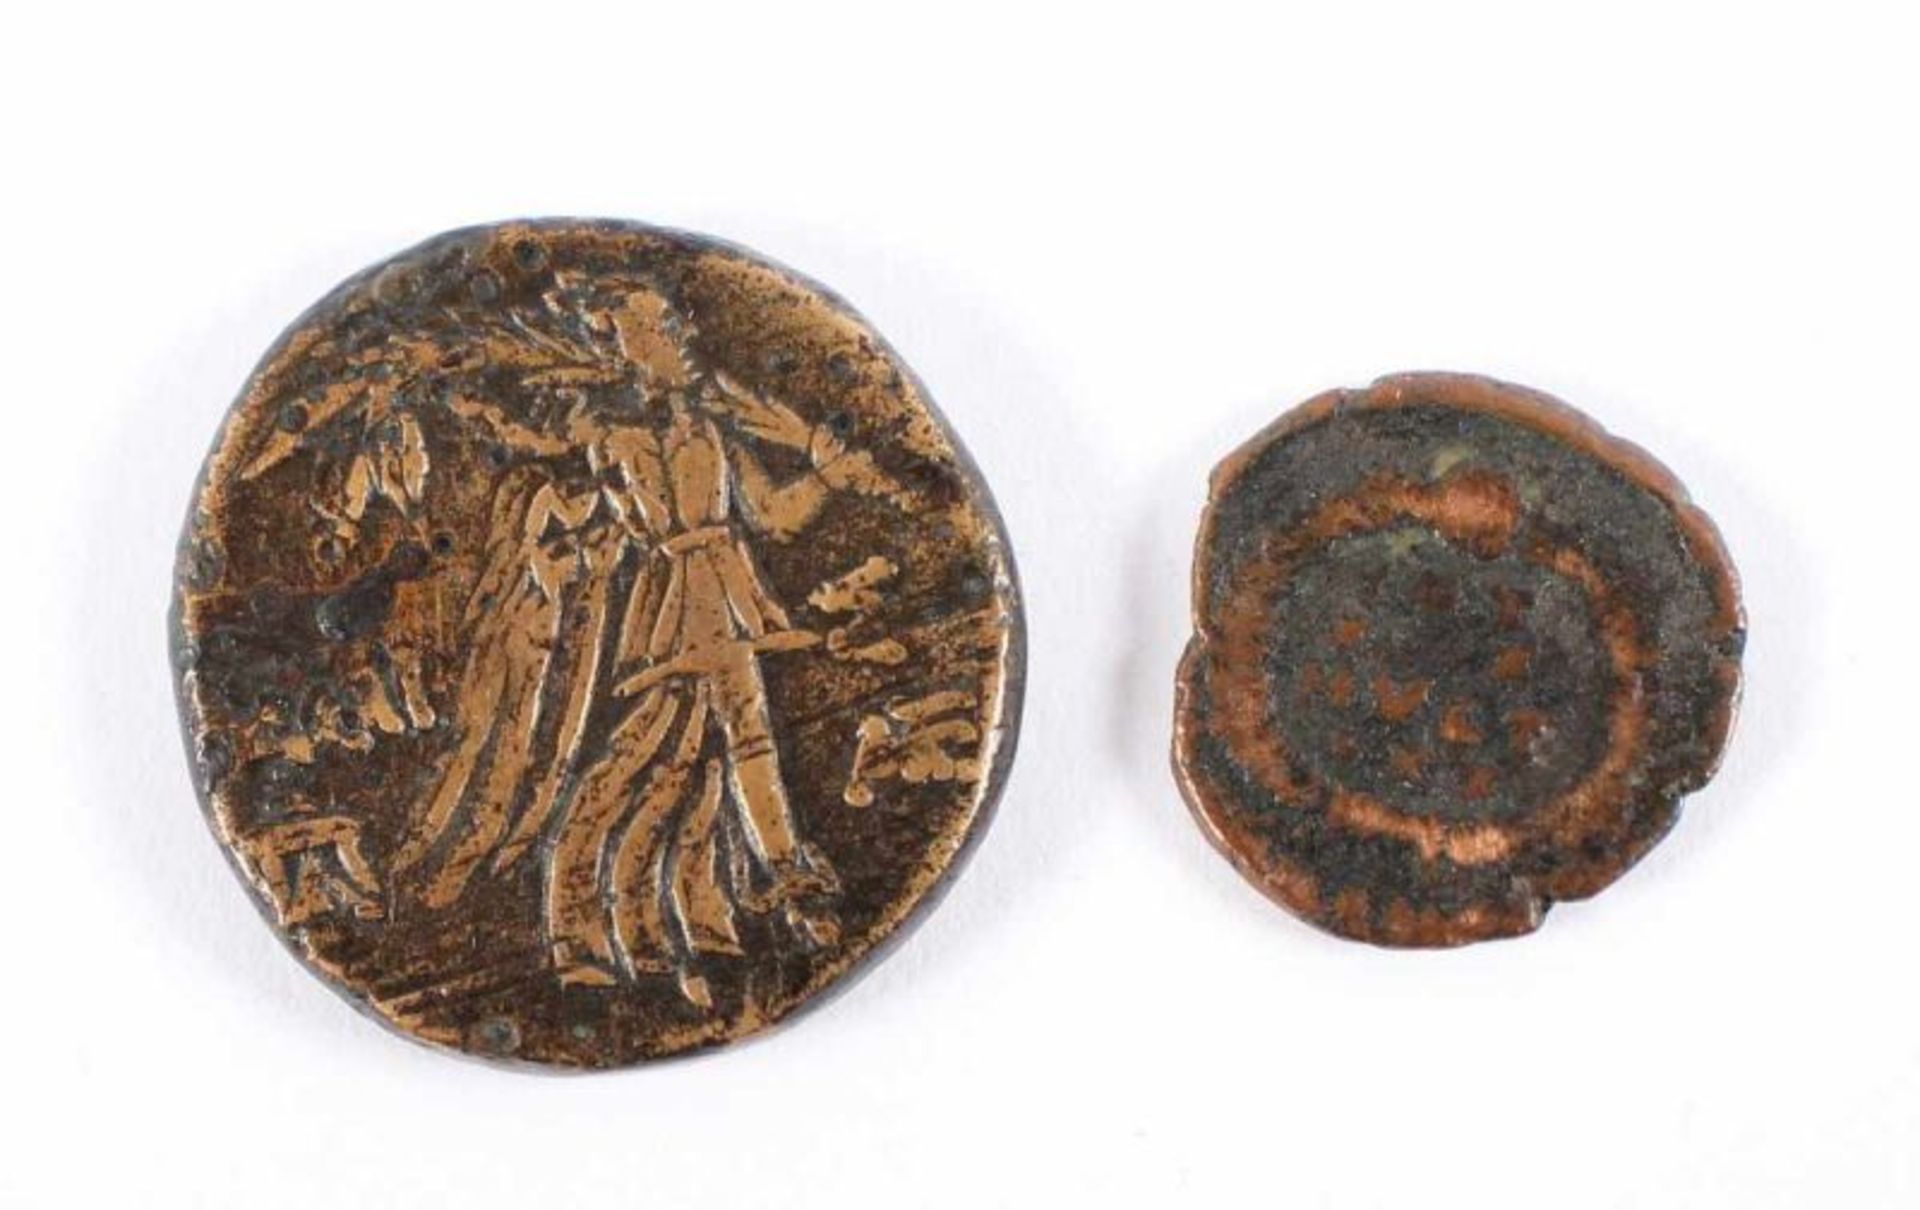 ZWEI ANTIKE MÜNZEN, Bronze/Kupfer, Dm 2 und 1,5, VORDERASIEN, ca. 2.-3. Jh.v.Chr. 22.00 % buyer's - Bild 2 aus 2